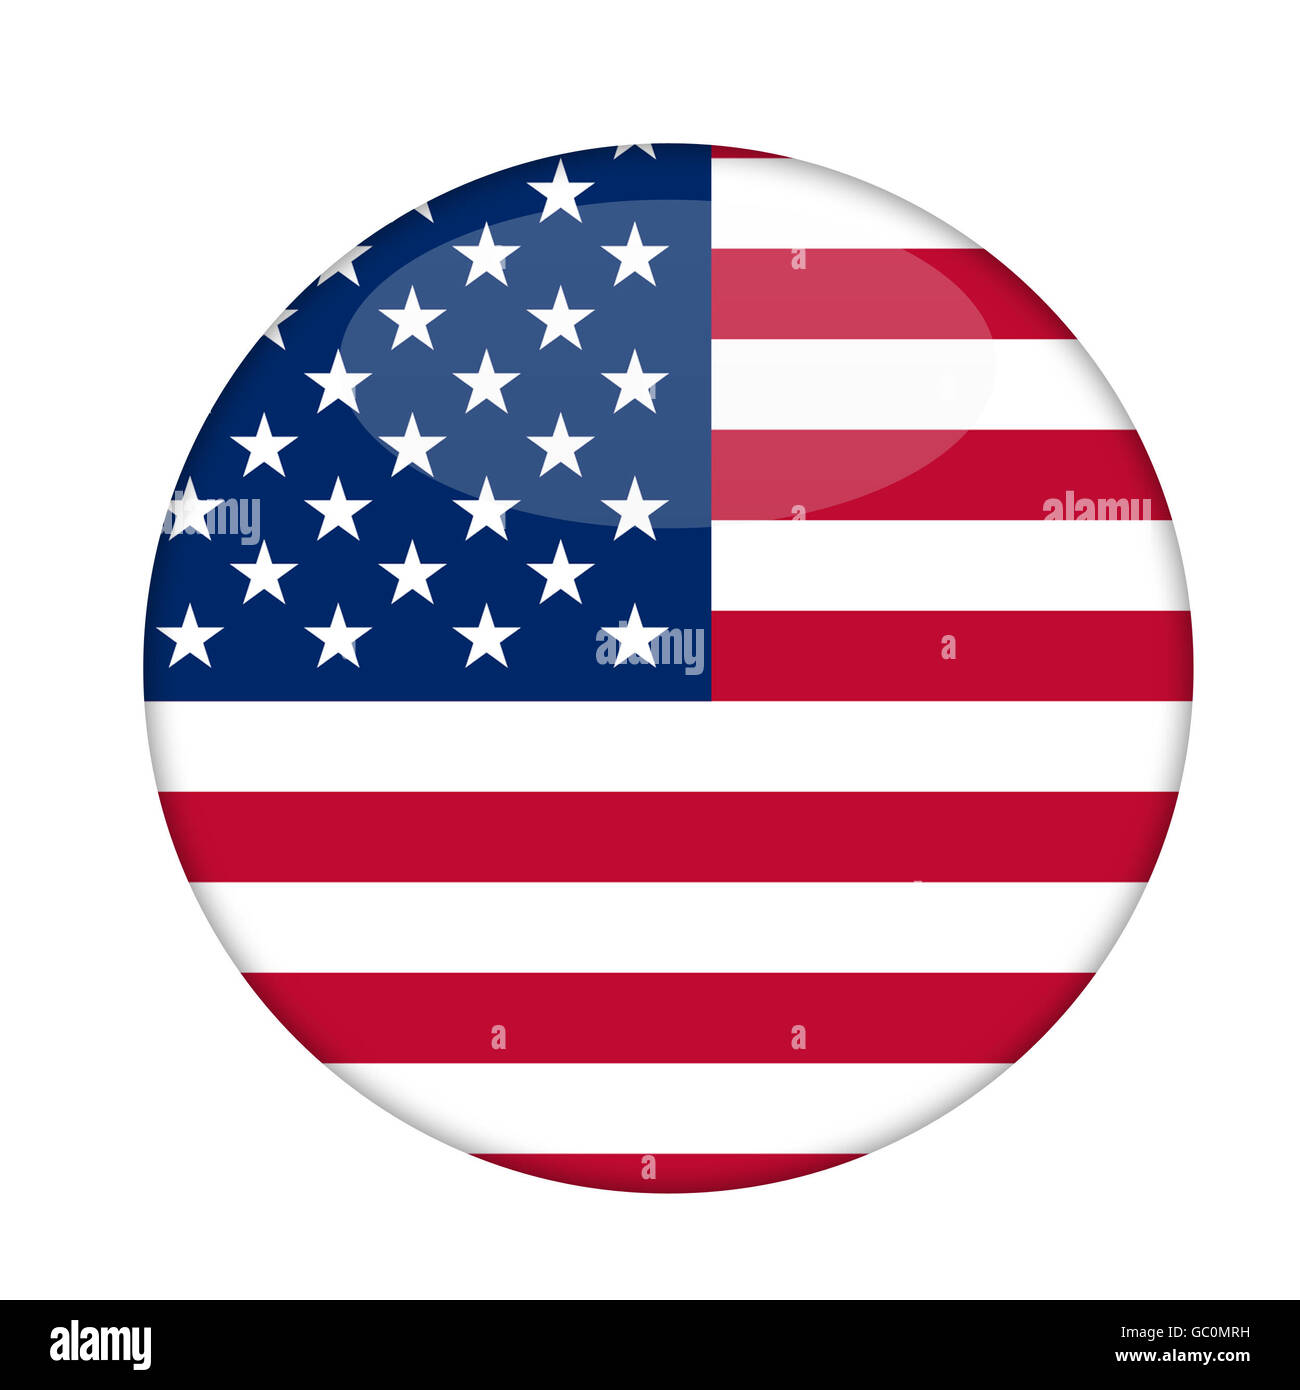 Amerikanische Stars And Stripes Abzeichen isoliert auf einem weißen Hintergrund. Stockfoto